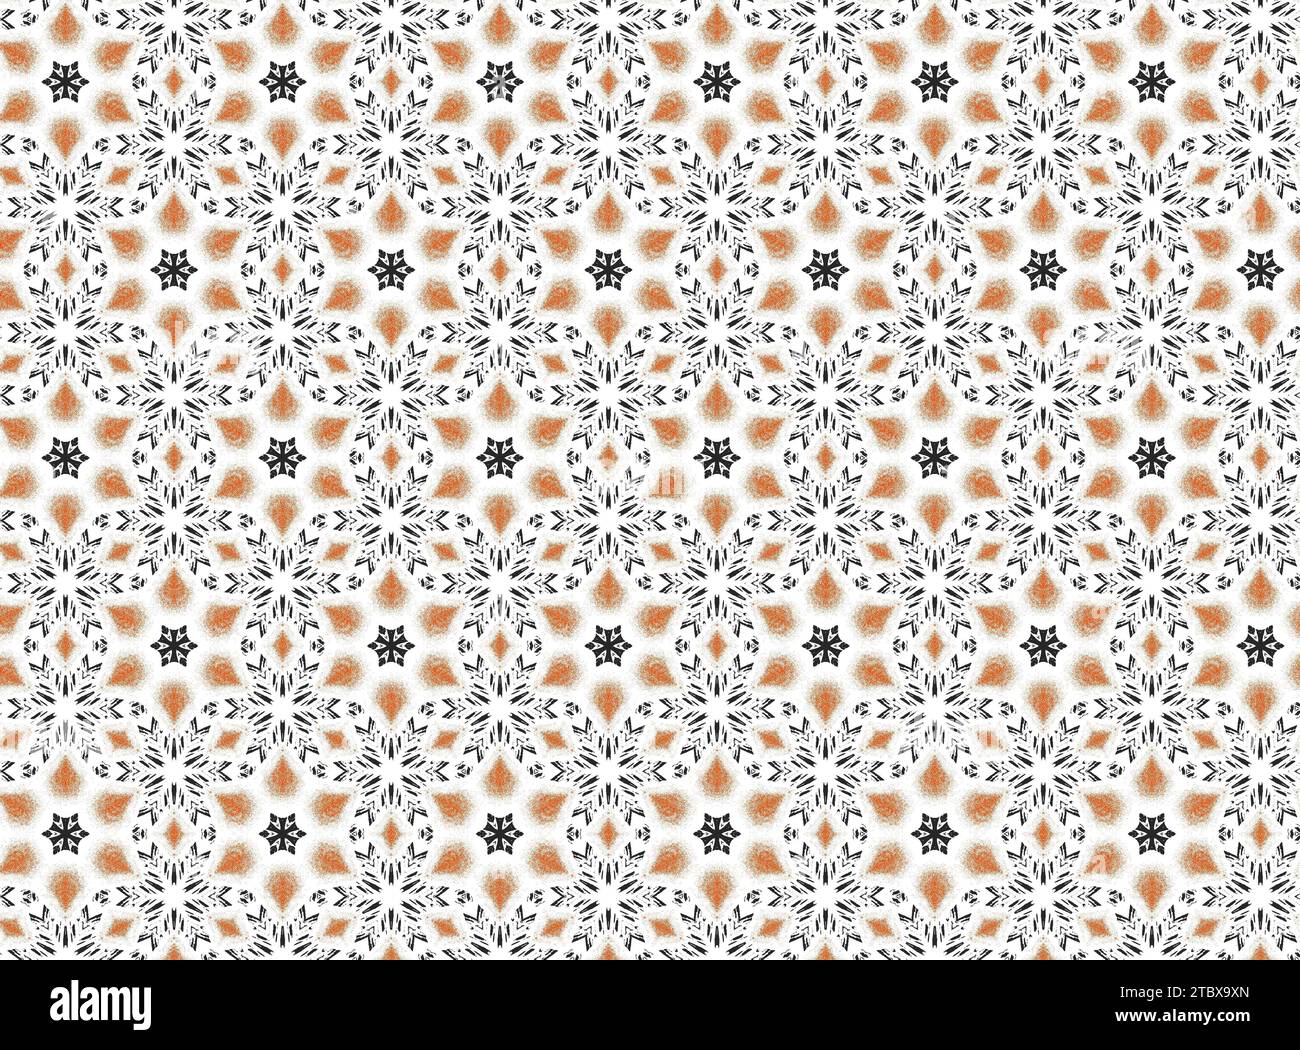 Questo sfondo astratto presenta uno sfondo arancione vivace con cerchi neri, fiori e fiocchi di neve in un motivo a ripetizione Foto Stock